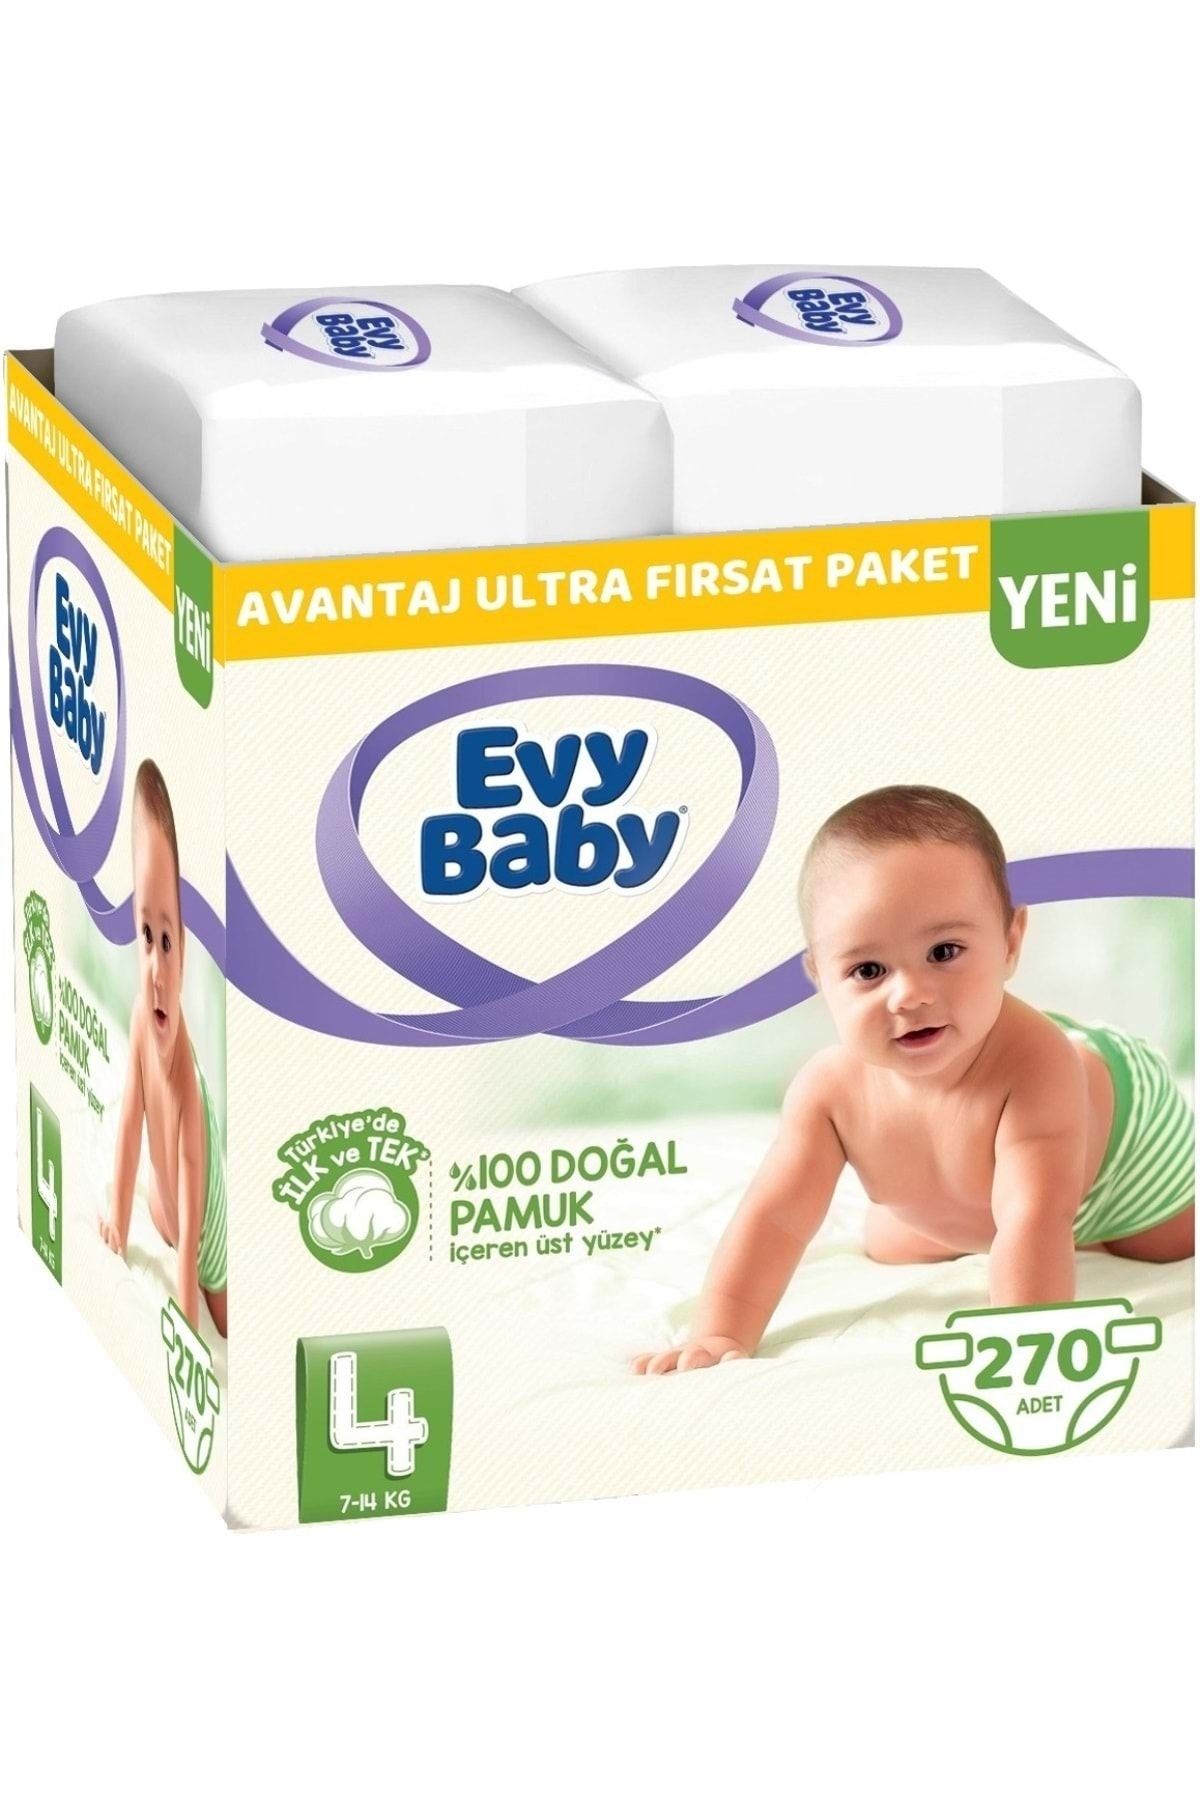 Evy Baby Bebek Bezi Beden:4 (7-14kg) Maxi 270 Adet Avantaj Ultra Fırsat Pk